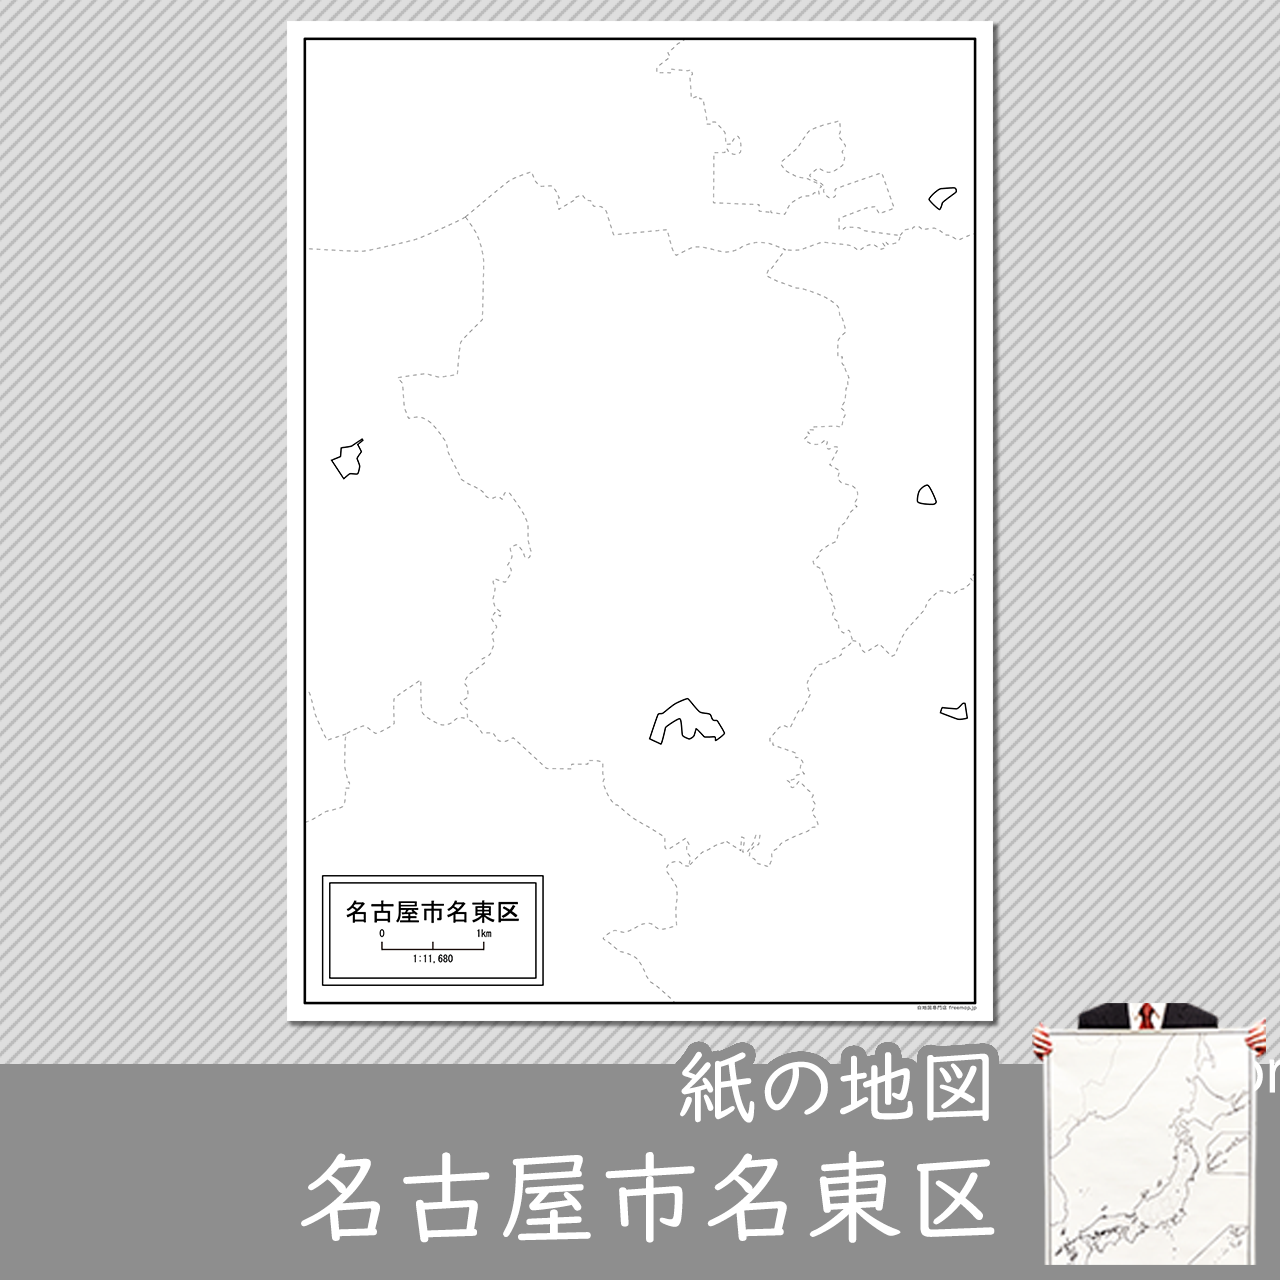 名古屋市名東区の紙の白地図のサムネイル